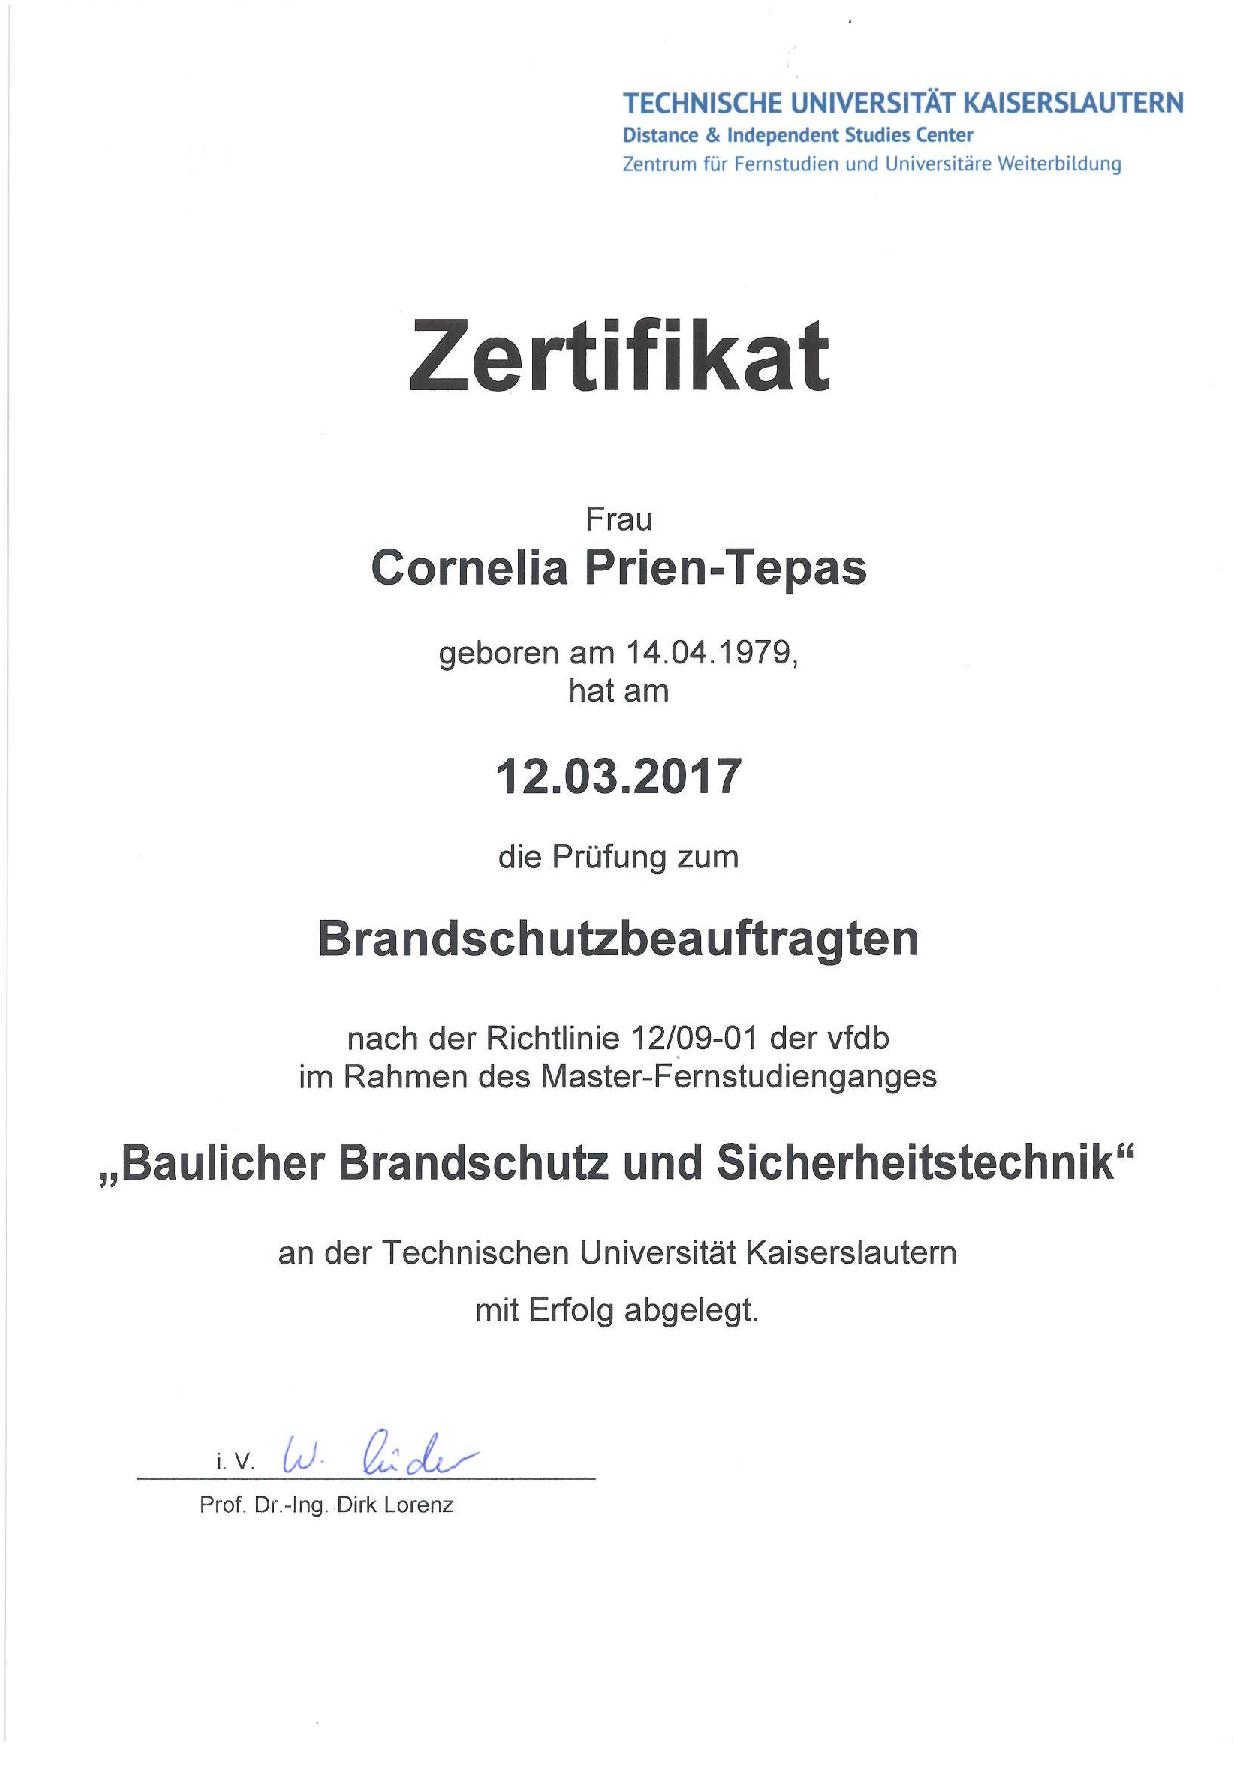 Zertifikat Brandschutz-001